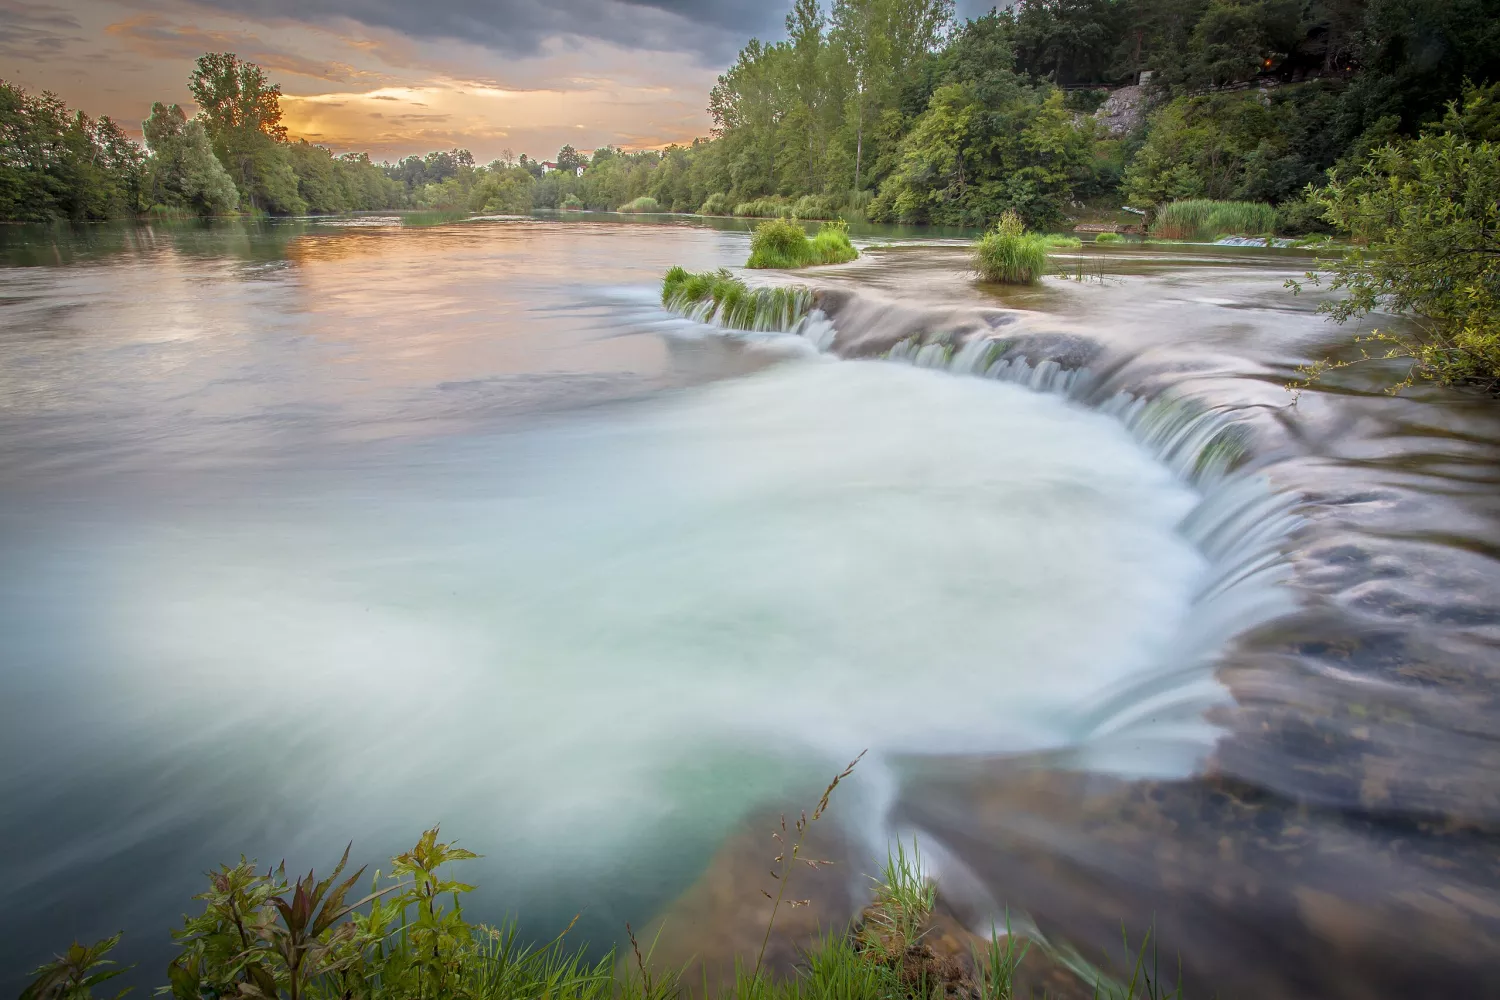 Mrežnica Waterfall - Mjesto Primislje - Croatia